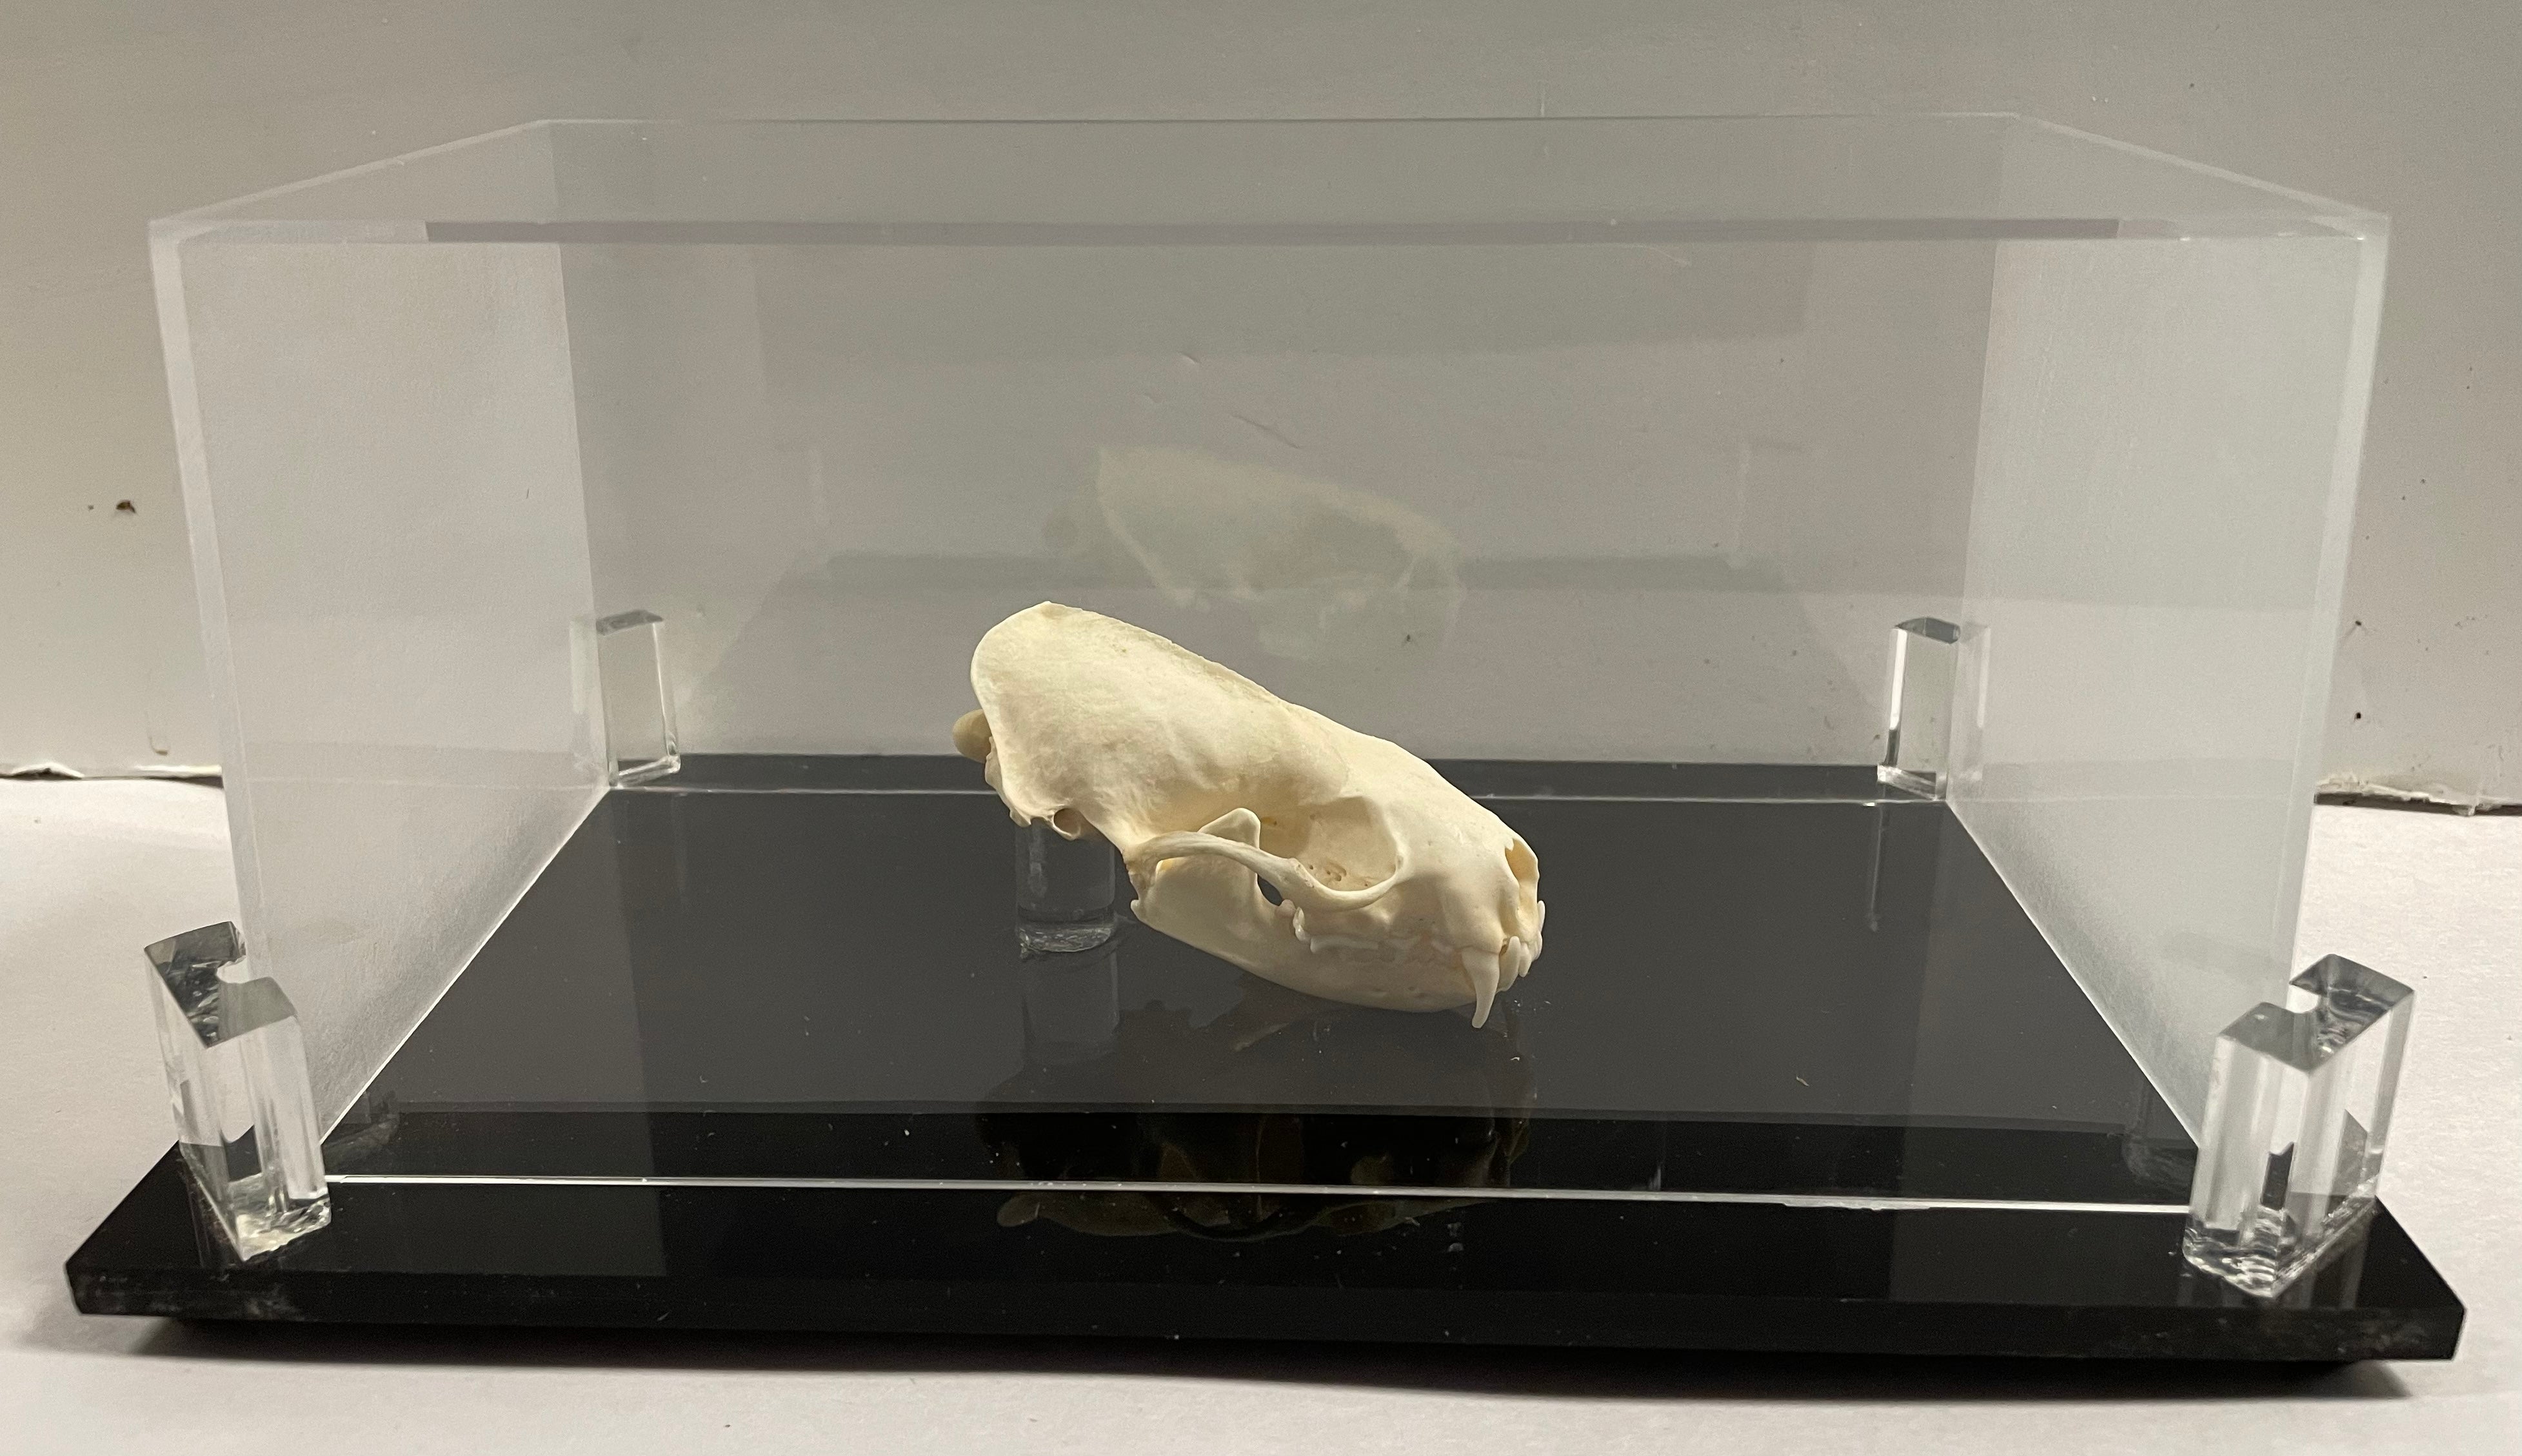 Least Weasel Skull